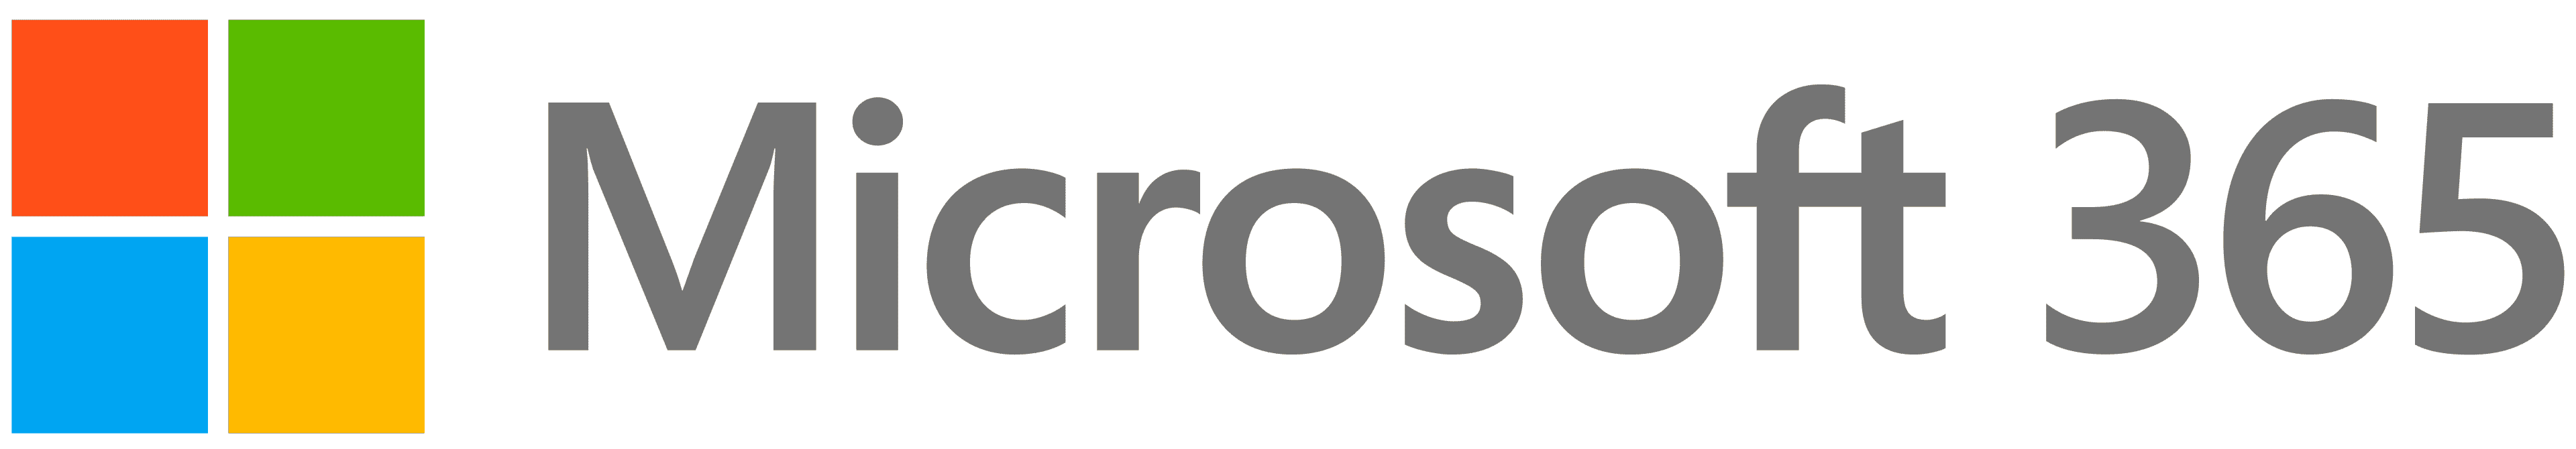 microsoft-365-logo-final